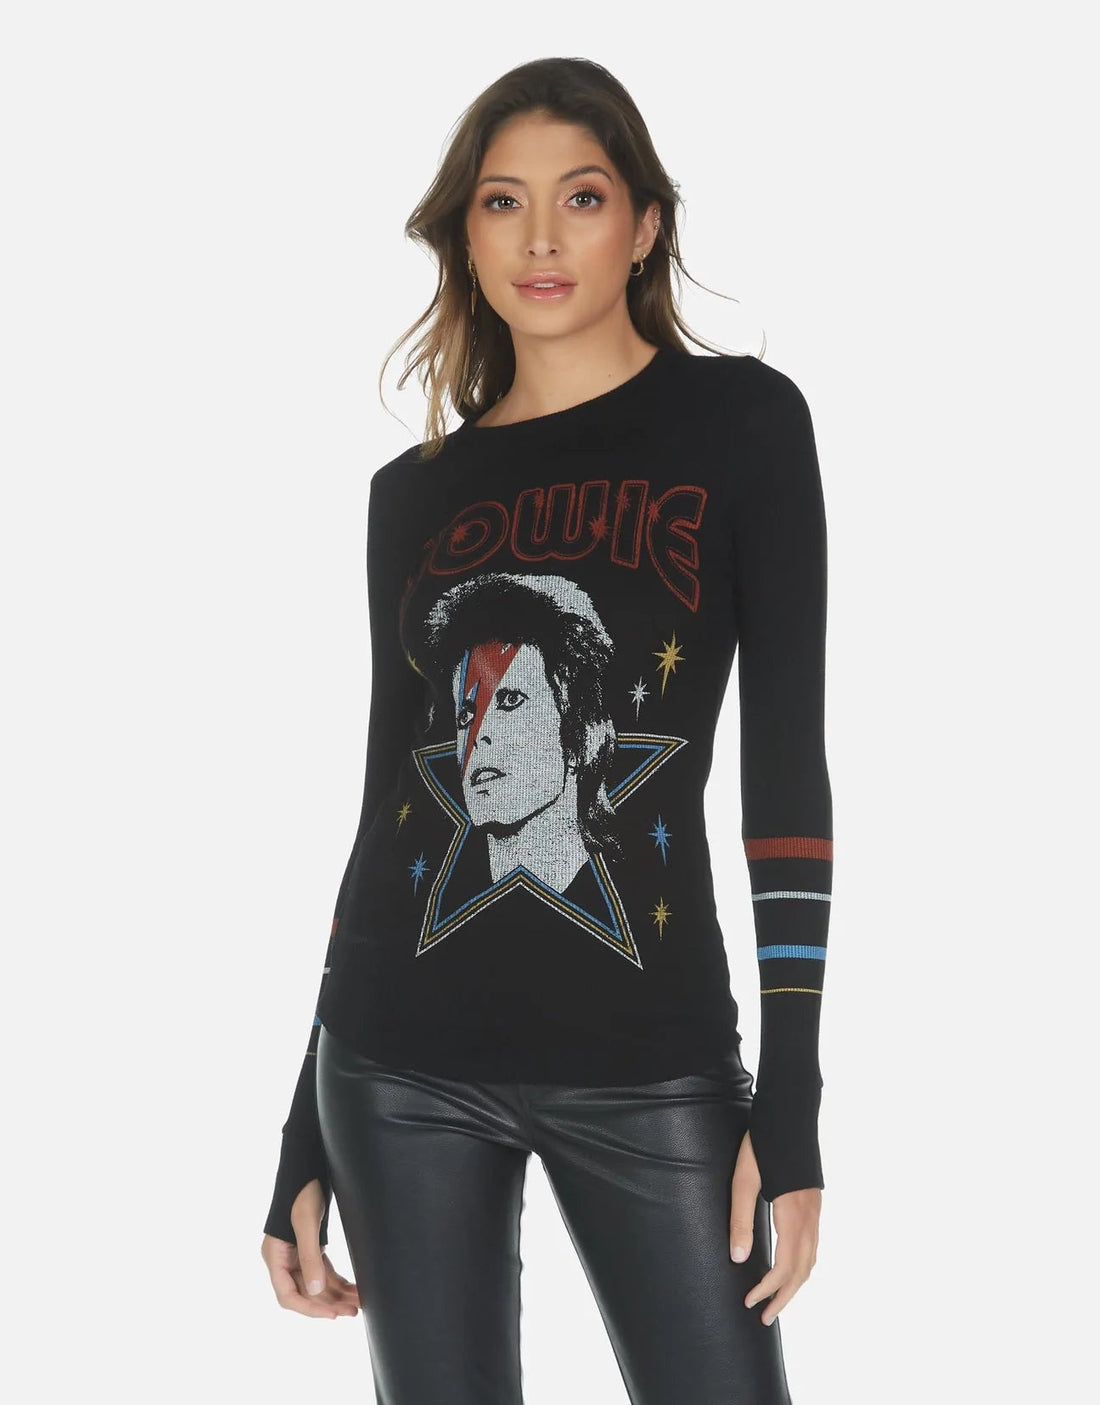 Shop Lauren Moshi McKinley Bowie 1973 Tour Top - Premium Long Sleeved Top from Lauren Moshi Online now at Spoiled Brat 